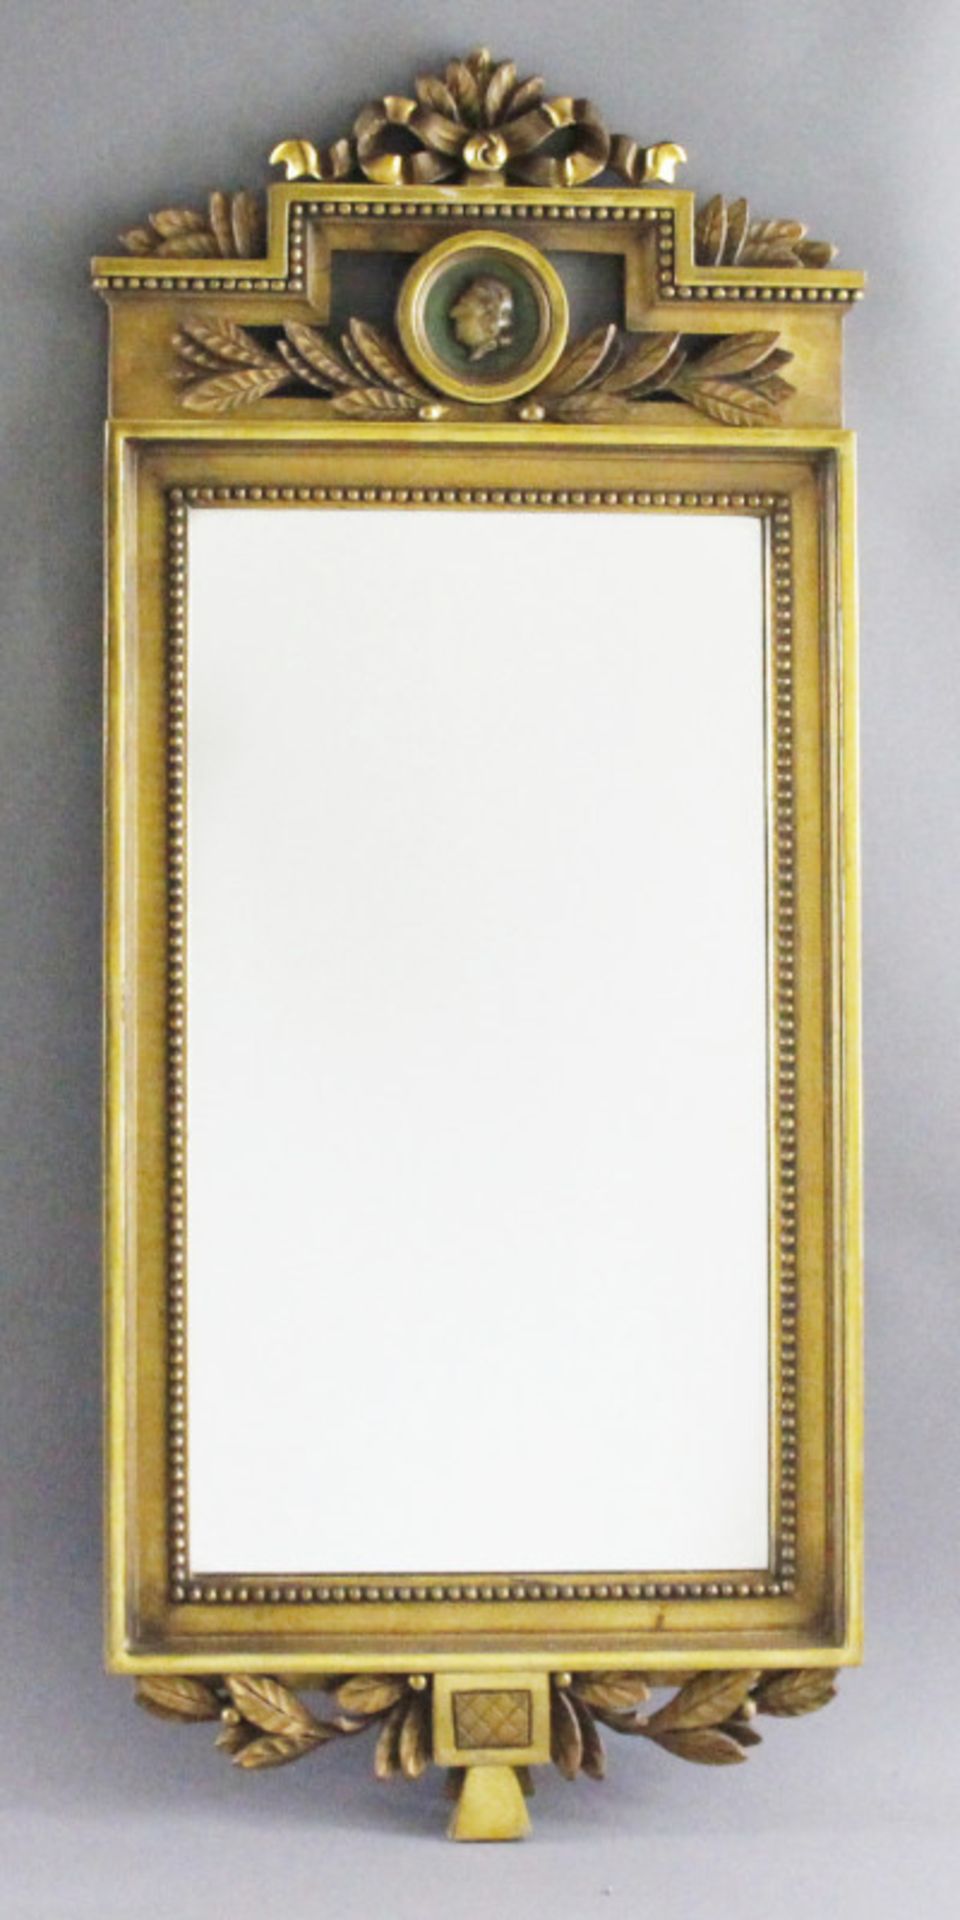 Spiegel im gustavianischen Stil, Schweden, Mitte 20. Jhd.gold gefaßt, Krone mit rundem Medaillon und